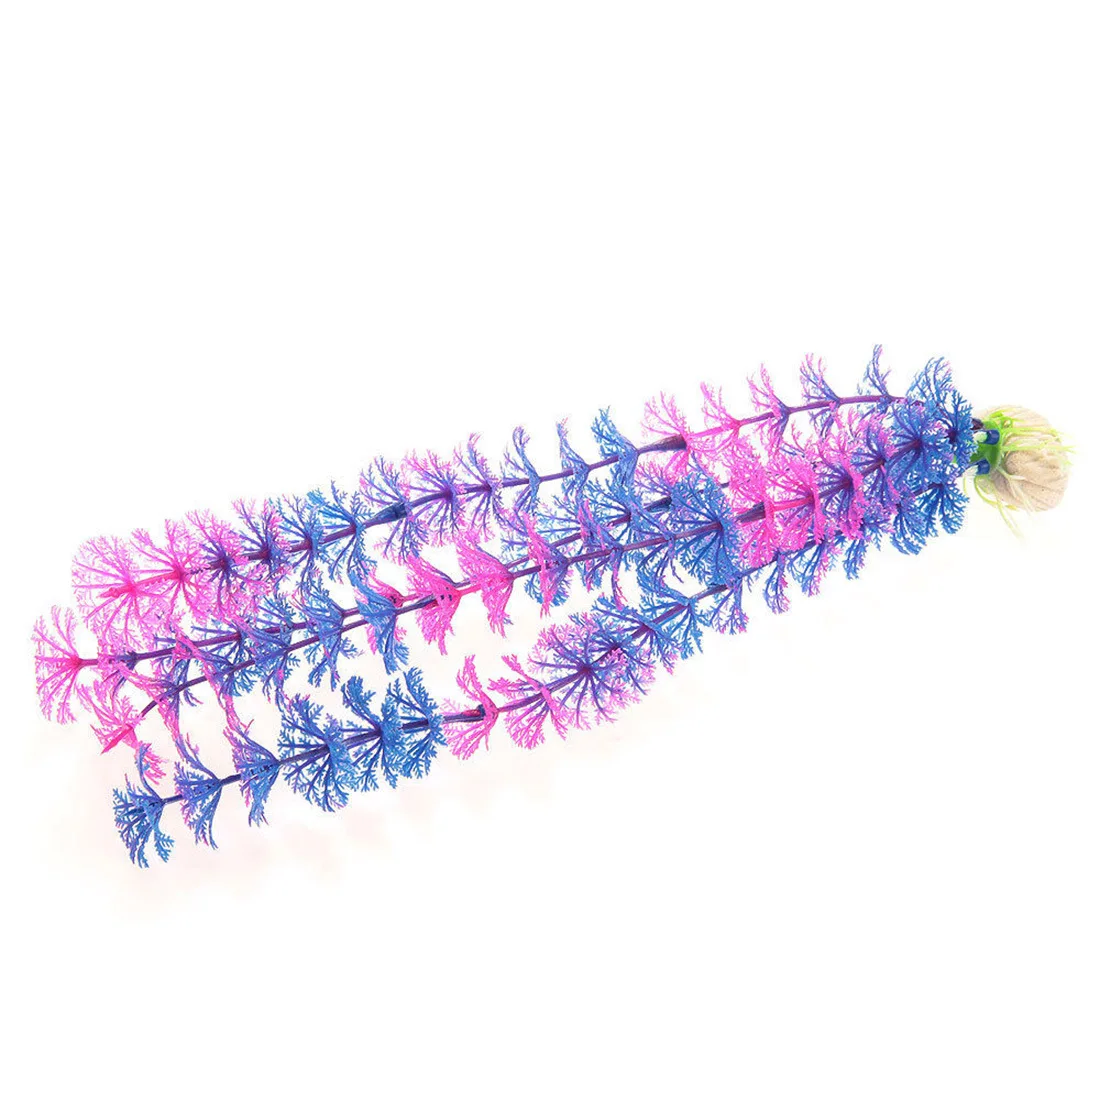 Аквариумная модель аквариумных растений аквариум для рыб ландшафтный дизайн искусственных растений фиолетовое дерево ландшафтный дизайн Король 3 секции ваниль фиолетовый